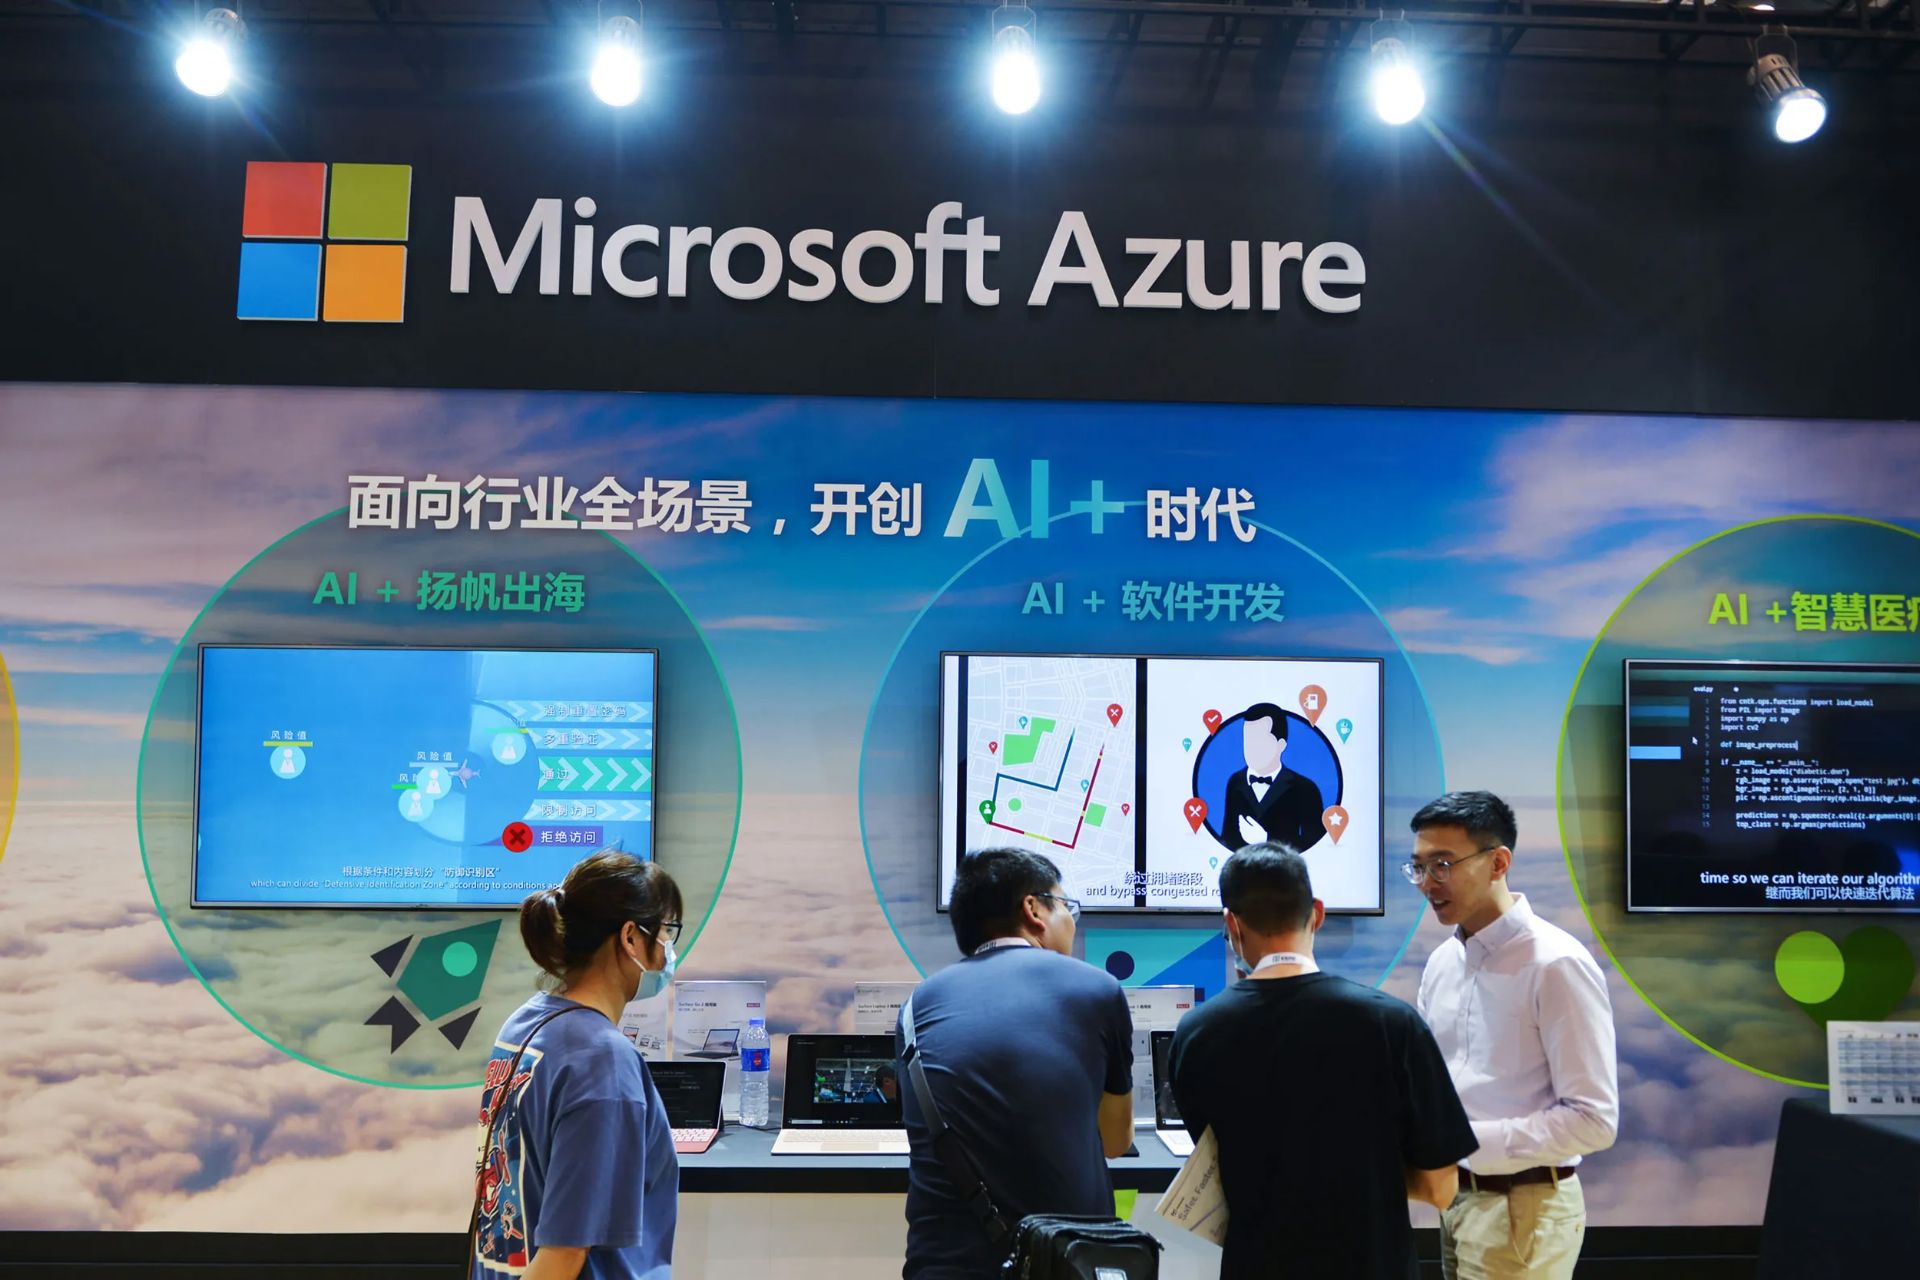 مرجع متخصصين ايران سرويس ابري مايكروسافت آژور / Microsoft Azure در فروشگاهي در چين